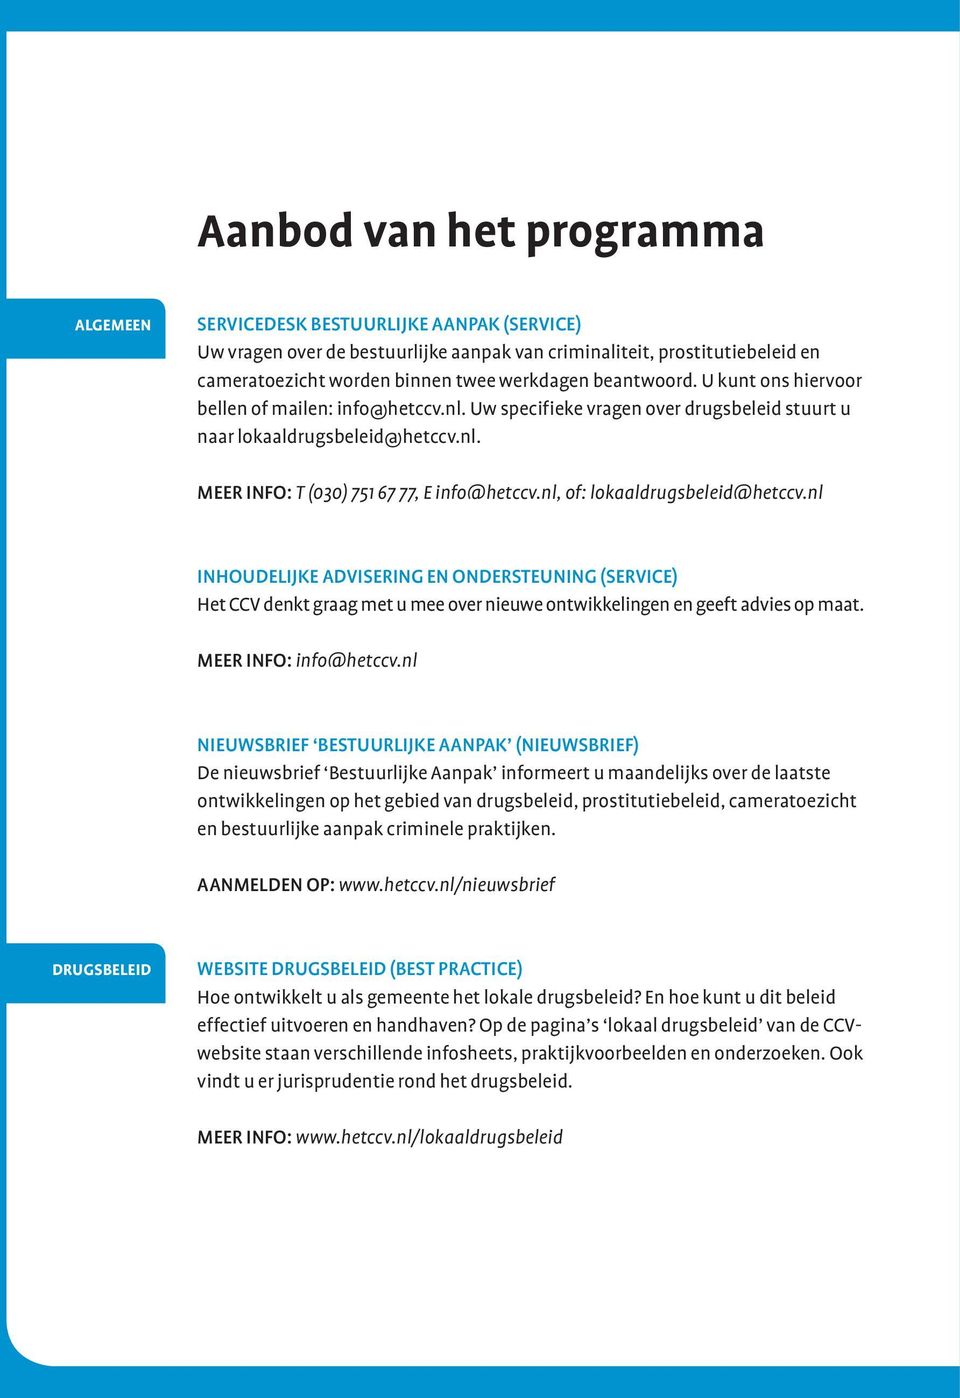 nl, of: lokaaldrugsbeleid@hetccv.nl Inhoudelijke advisering en ondersteuning (service) Het CCV denkt graag met u mee over nieuwe ontwikkelingen en geeft advies op maat.